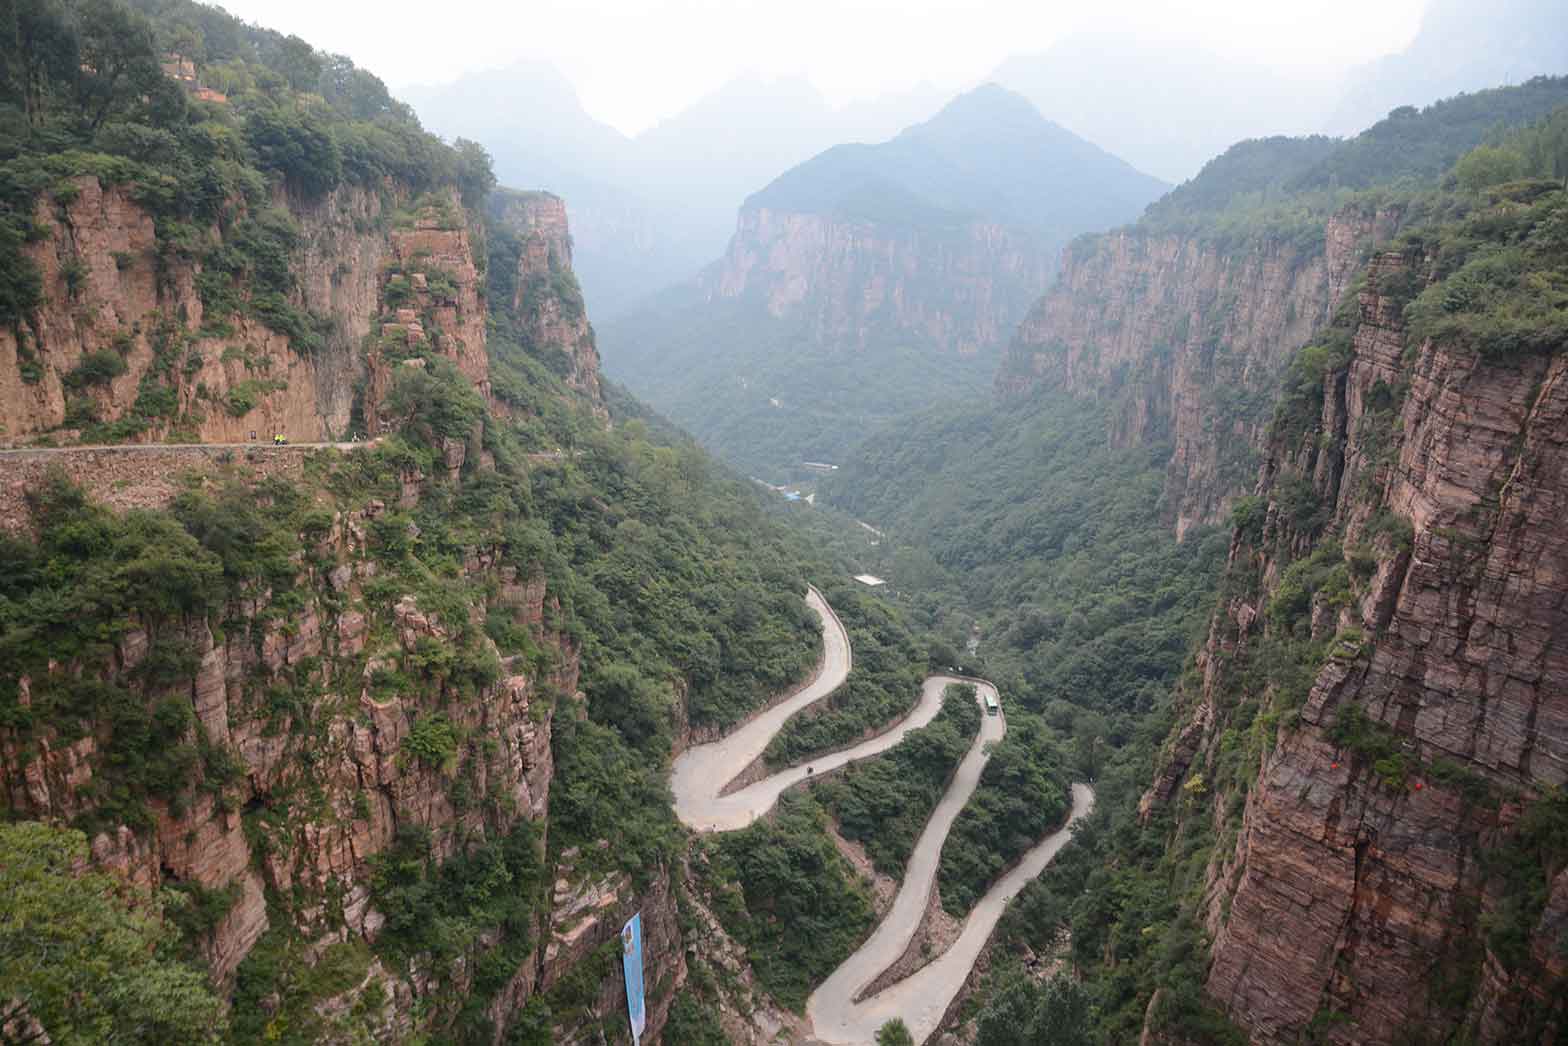 The Taihang mountains, China